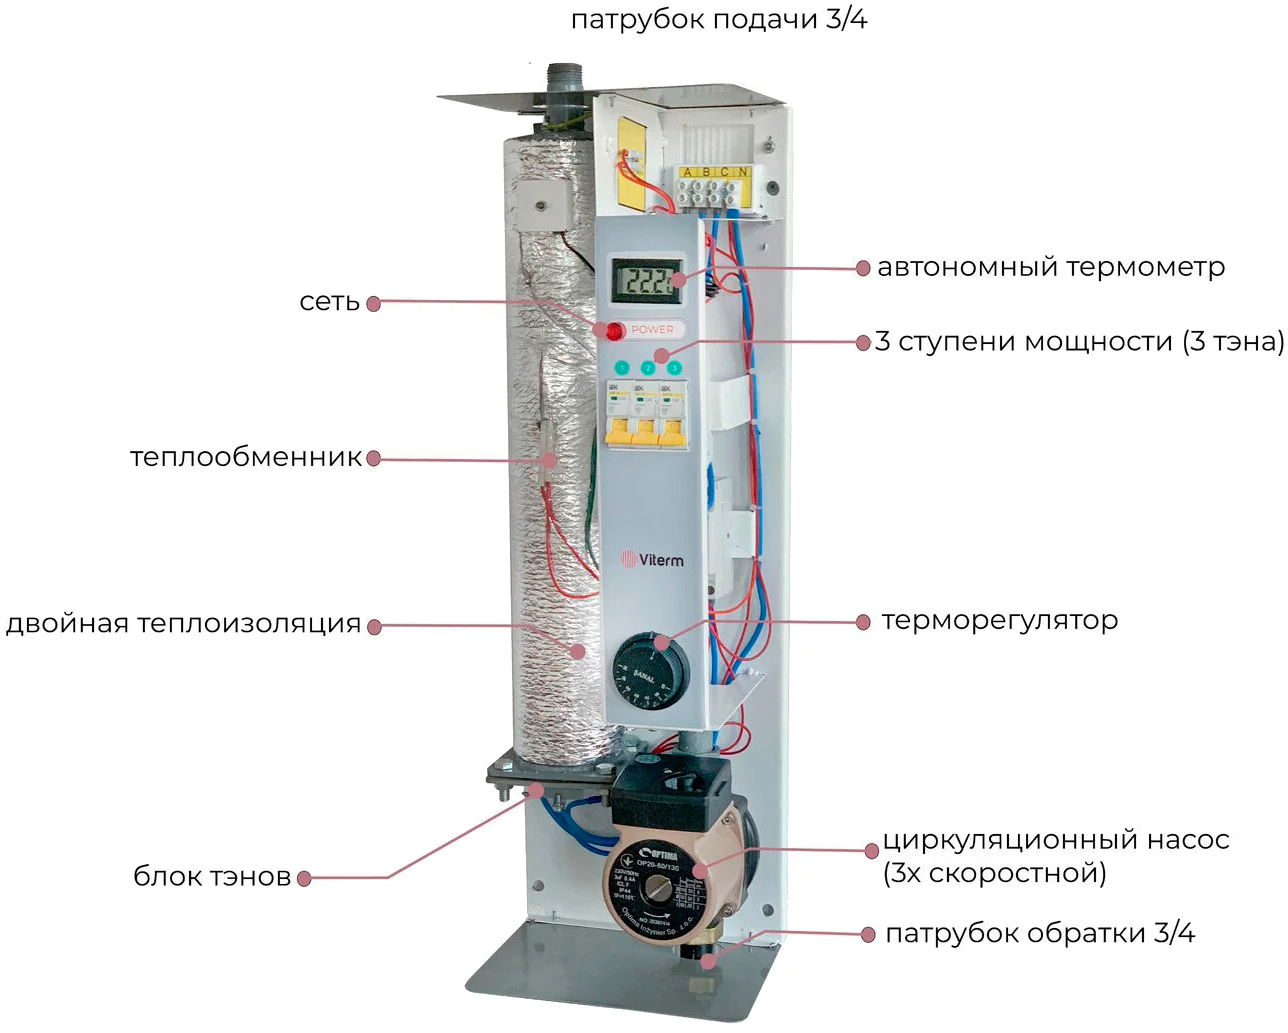 продаём Viterm Standart 12 кВт кВт 380В с насосом в Украине - фото 4